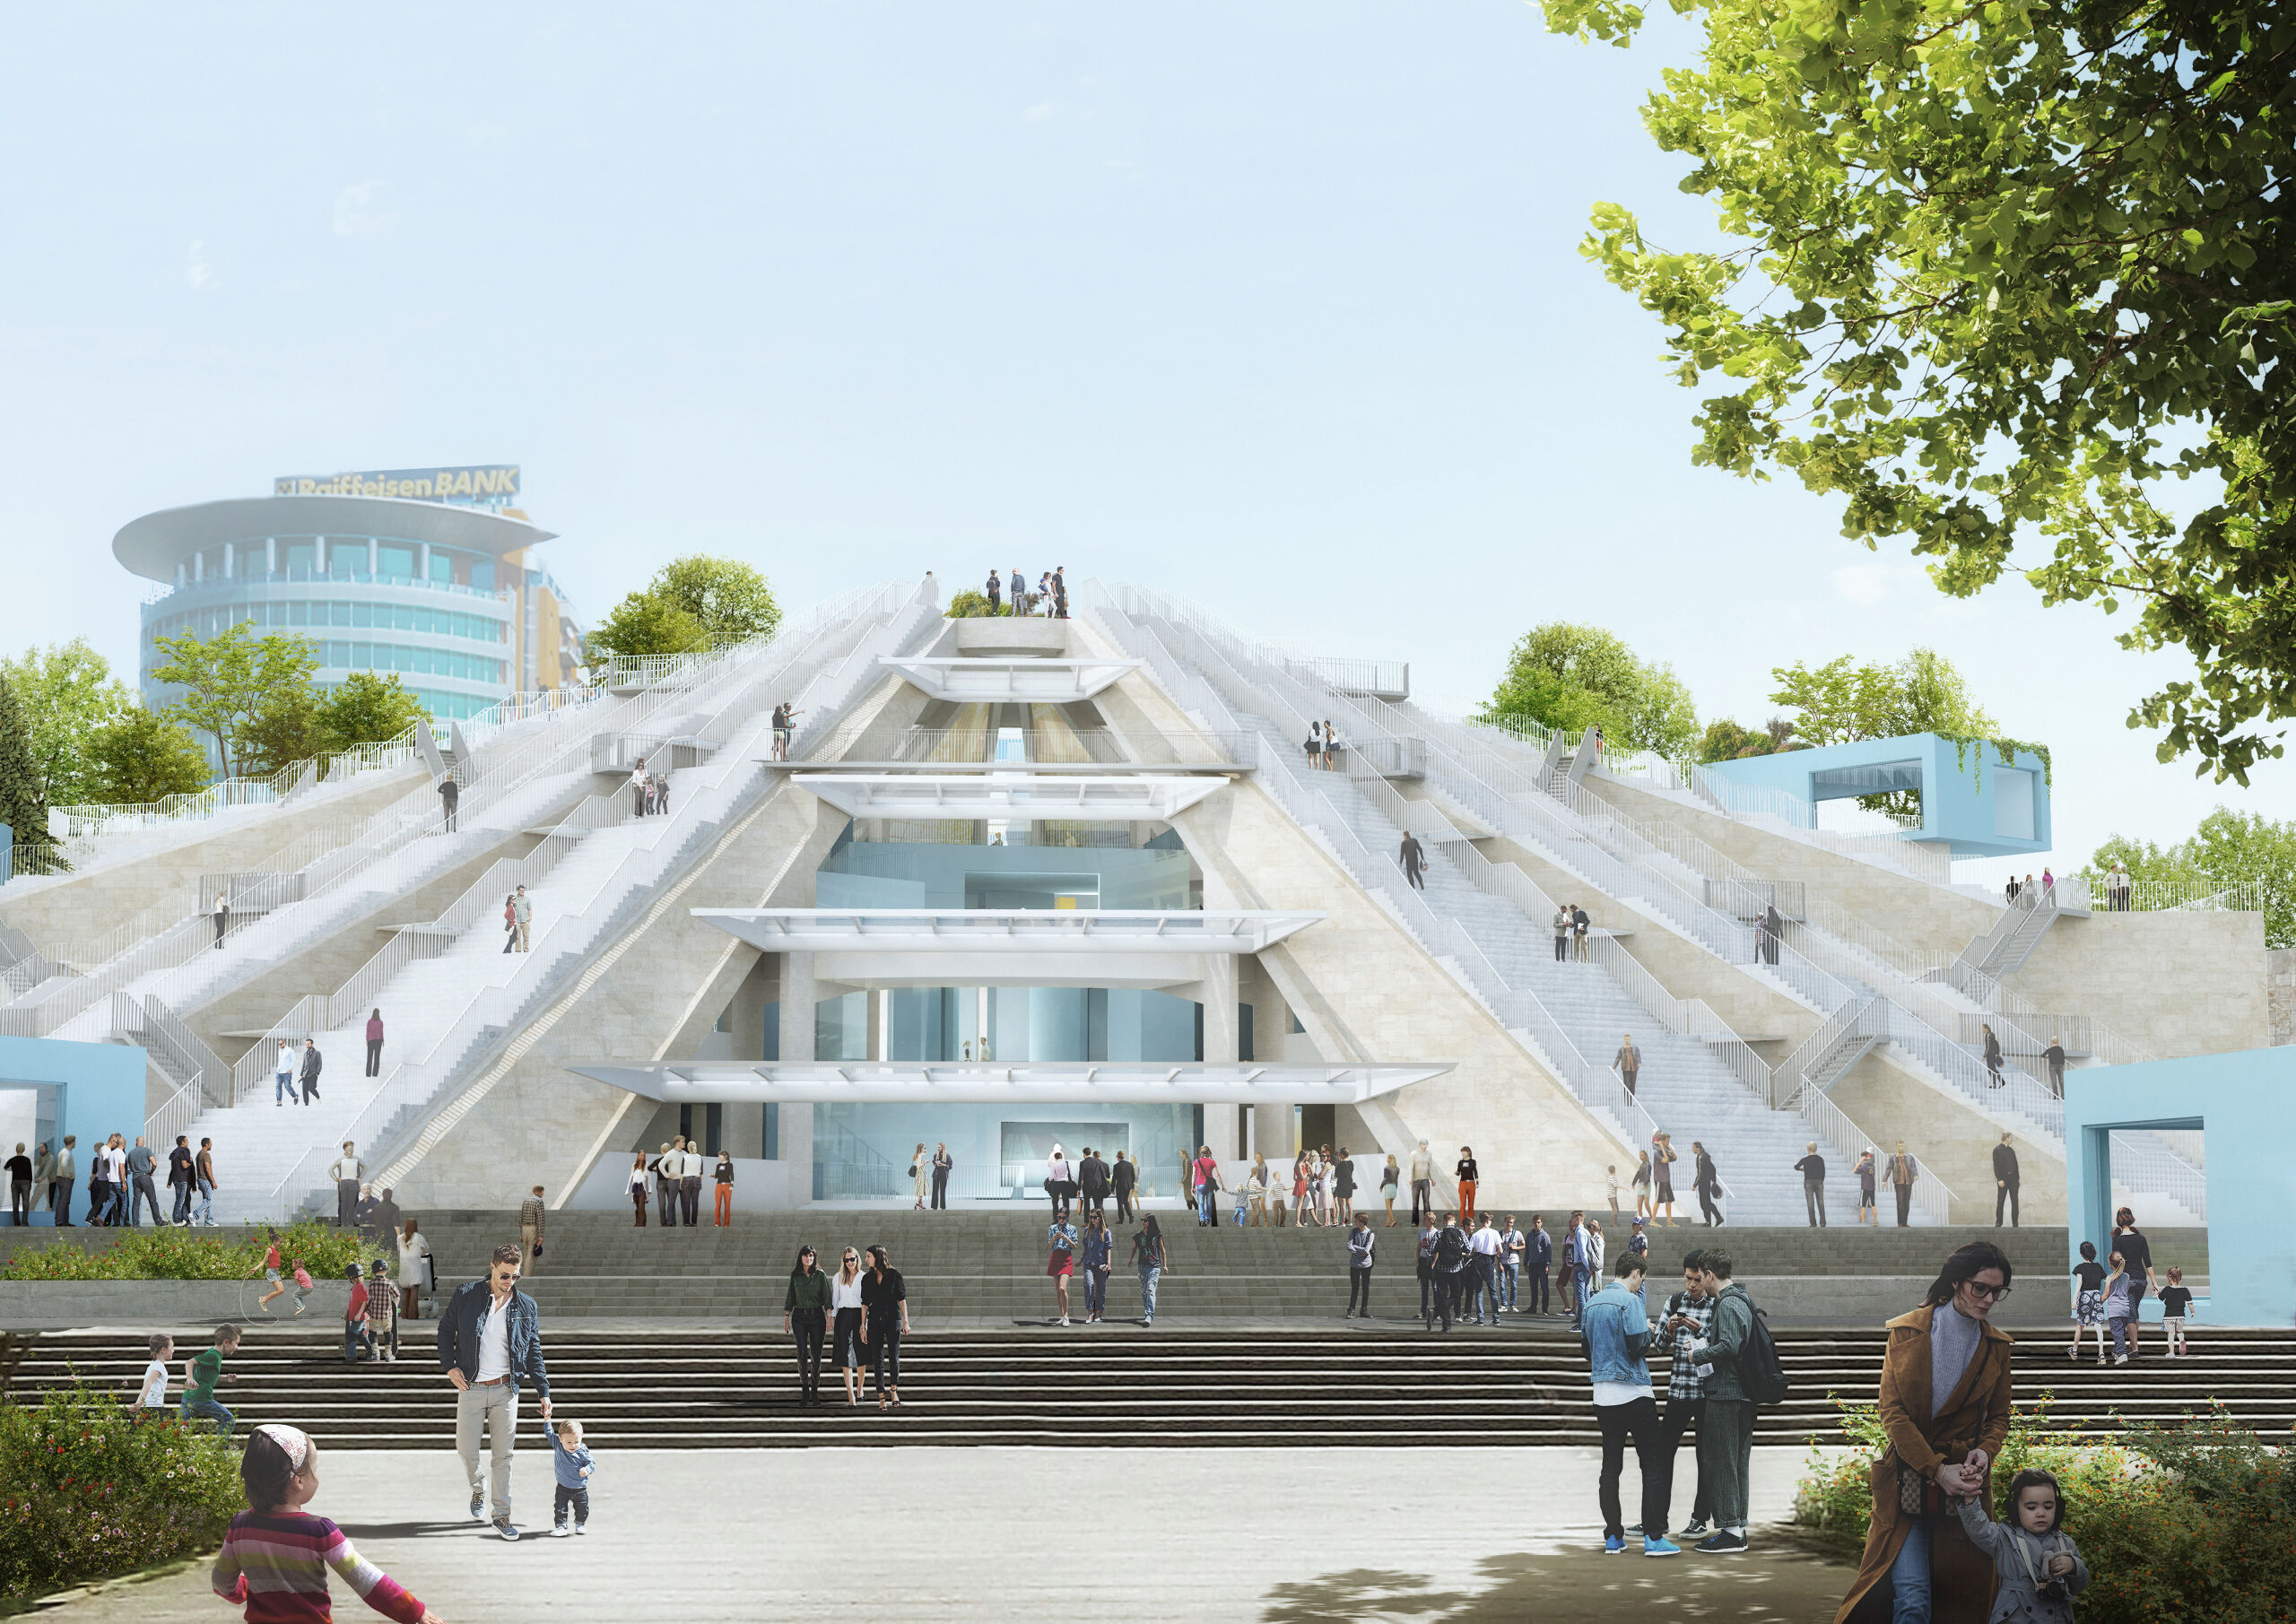 De Piramide van Tirana, het nieuwe ontwerp van Winy Maas, met een opgefriste buitenkant